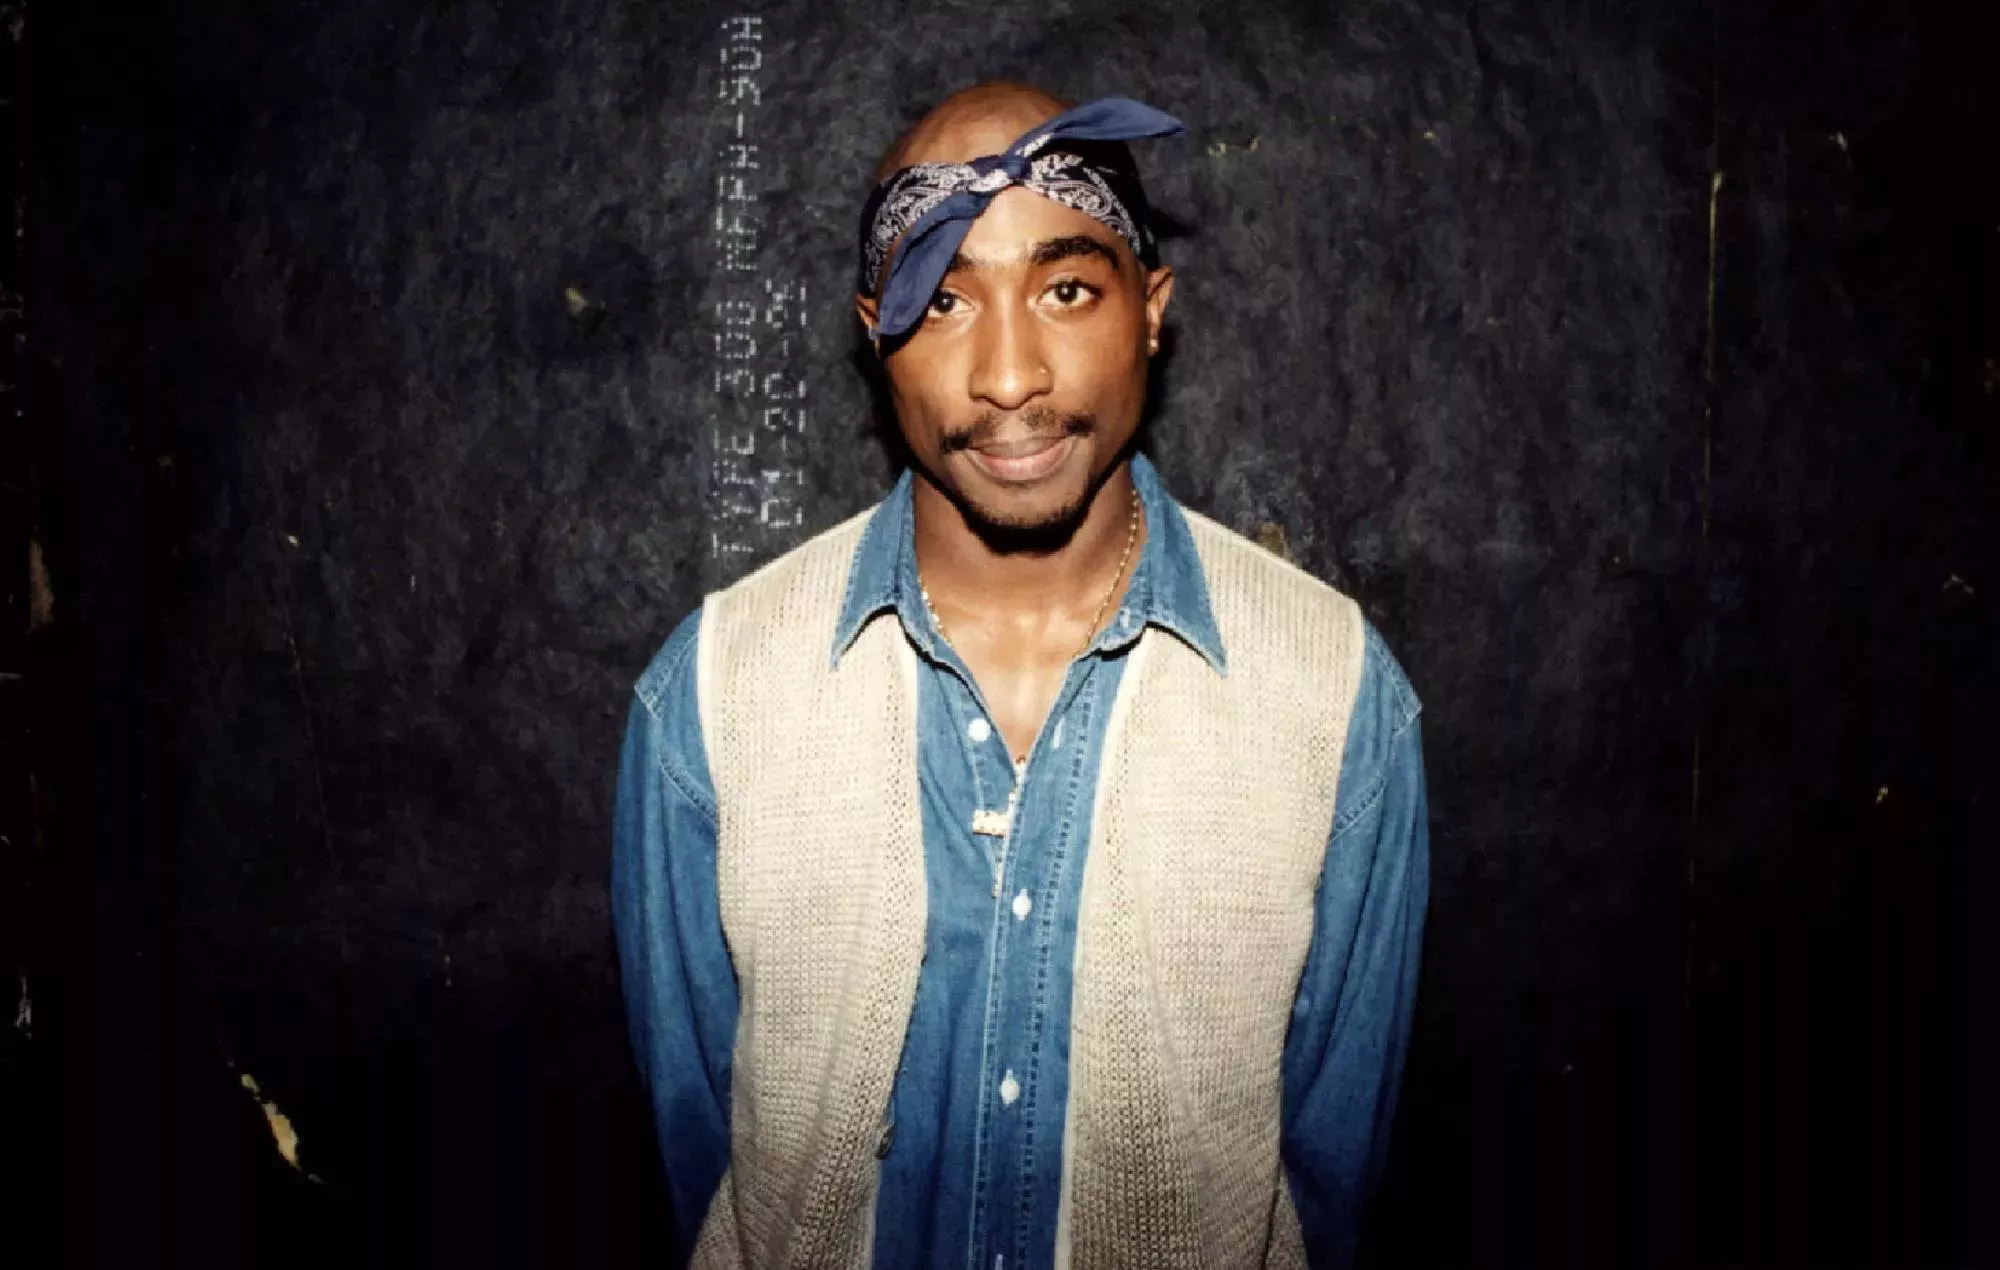 El sospechoso del asesinato de Tupac Shakur dice que sus comentarios eran 